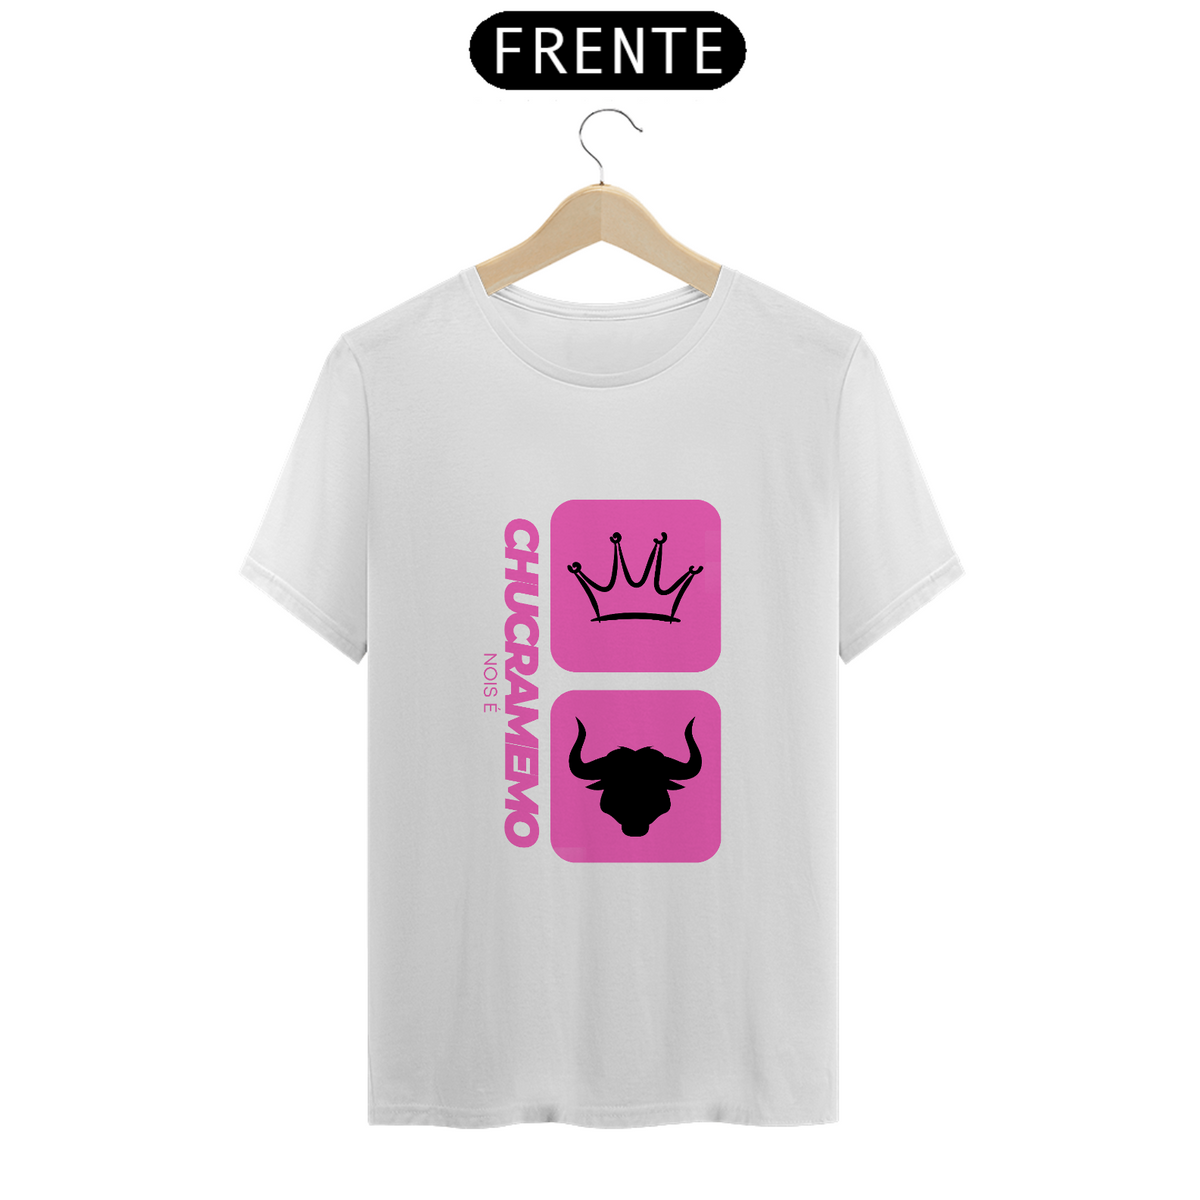 Nome do produto: Camiseta T-Shirt Classic Feminino / Chucra Memo